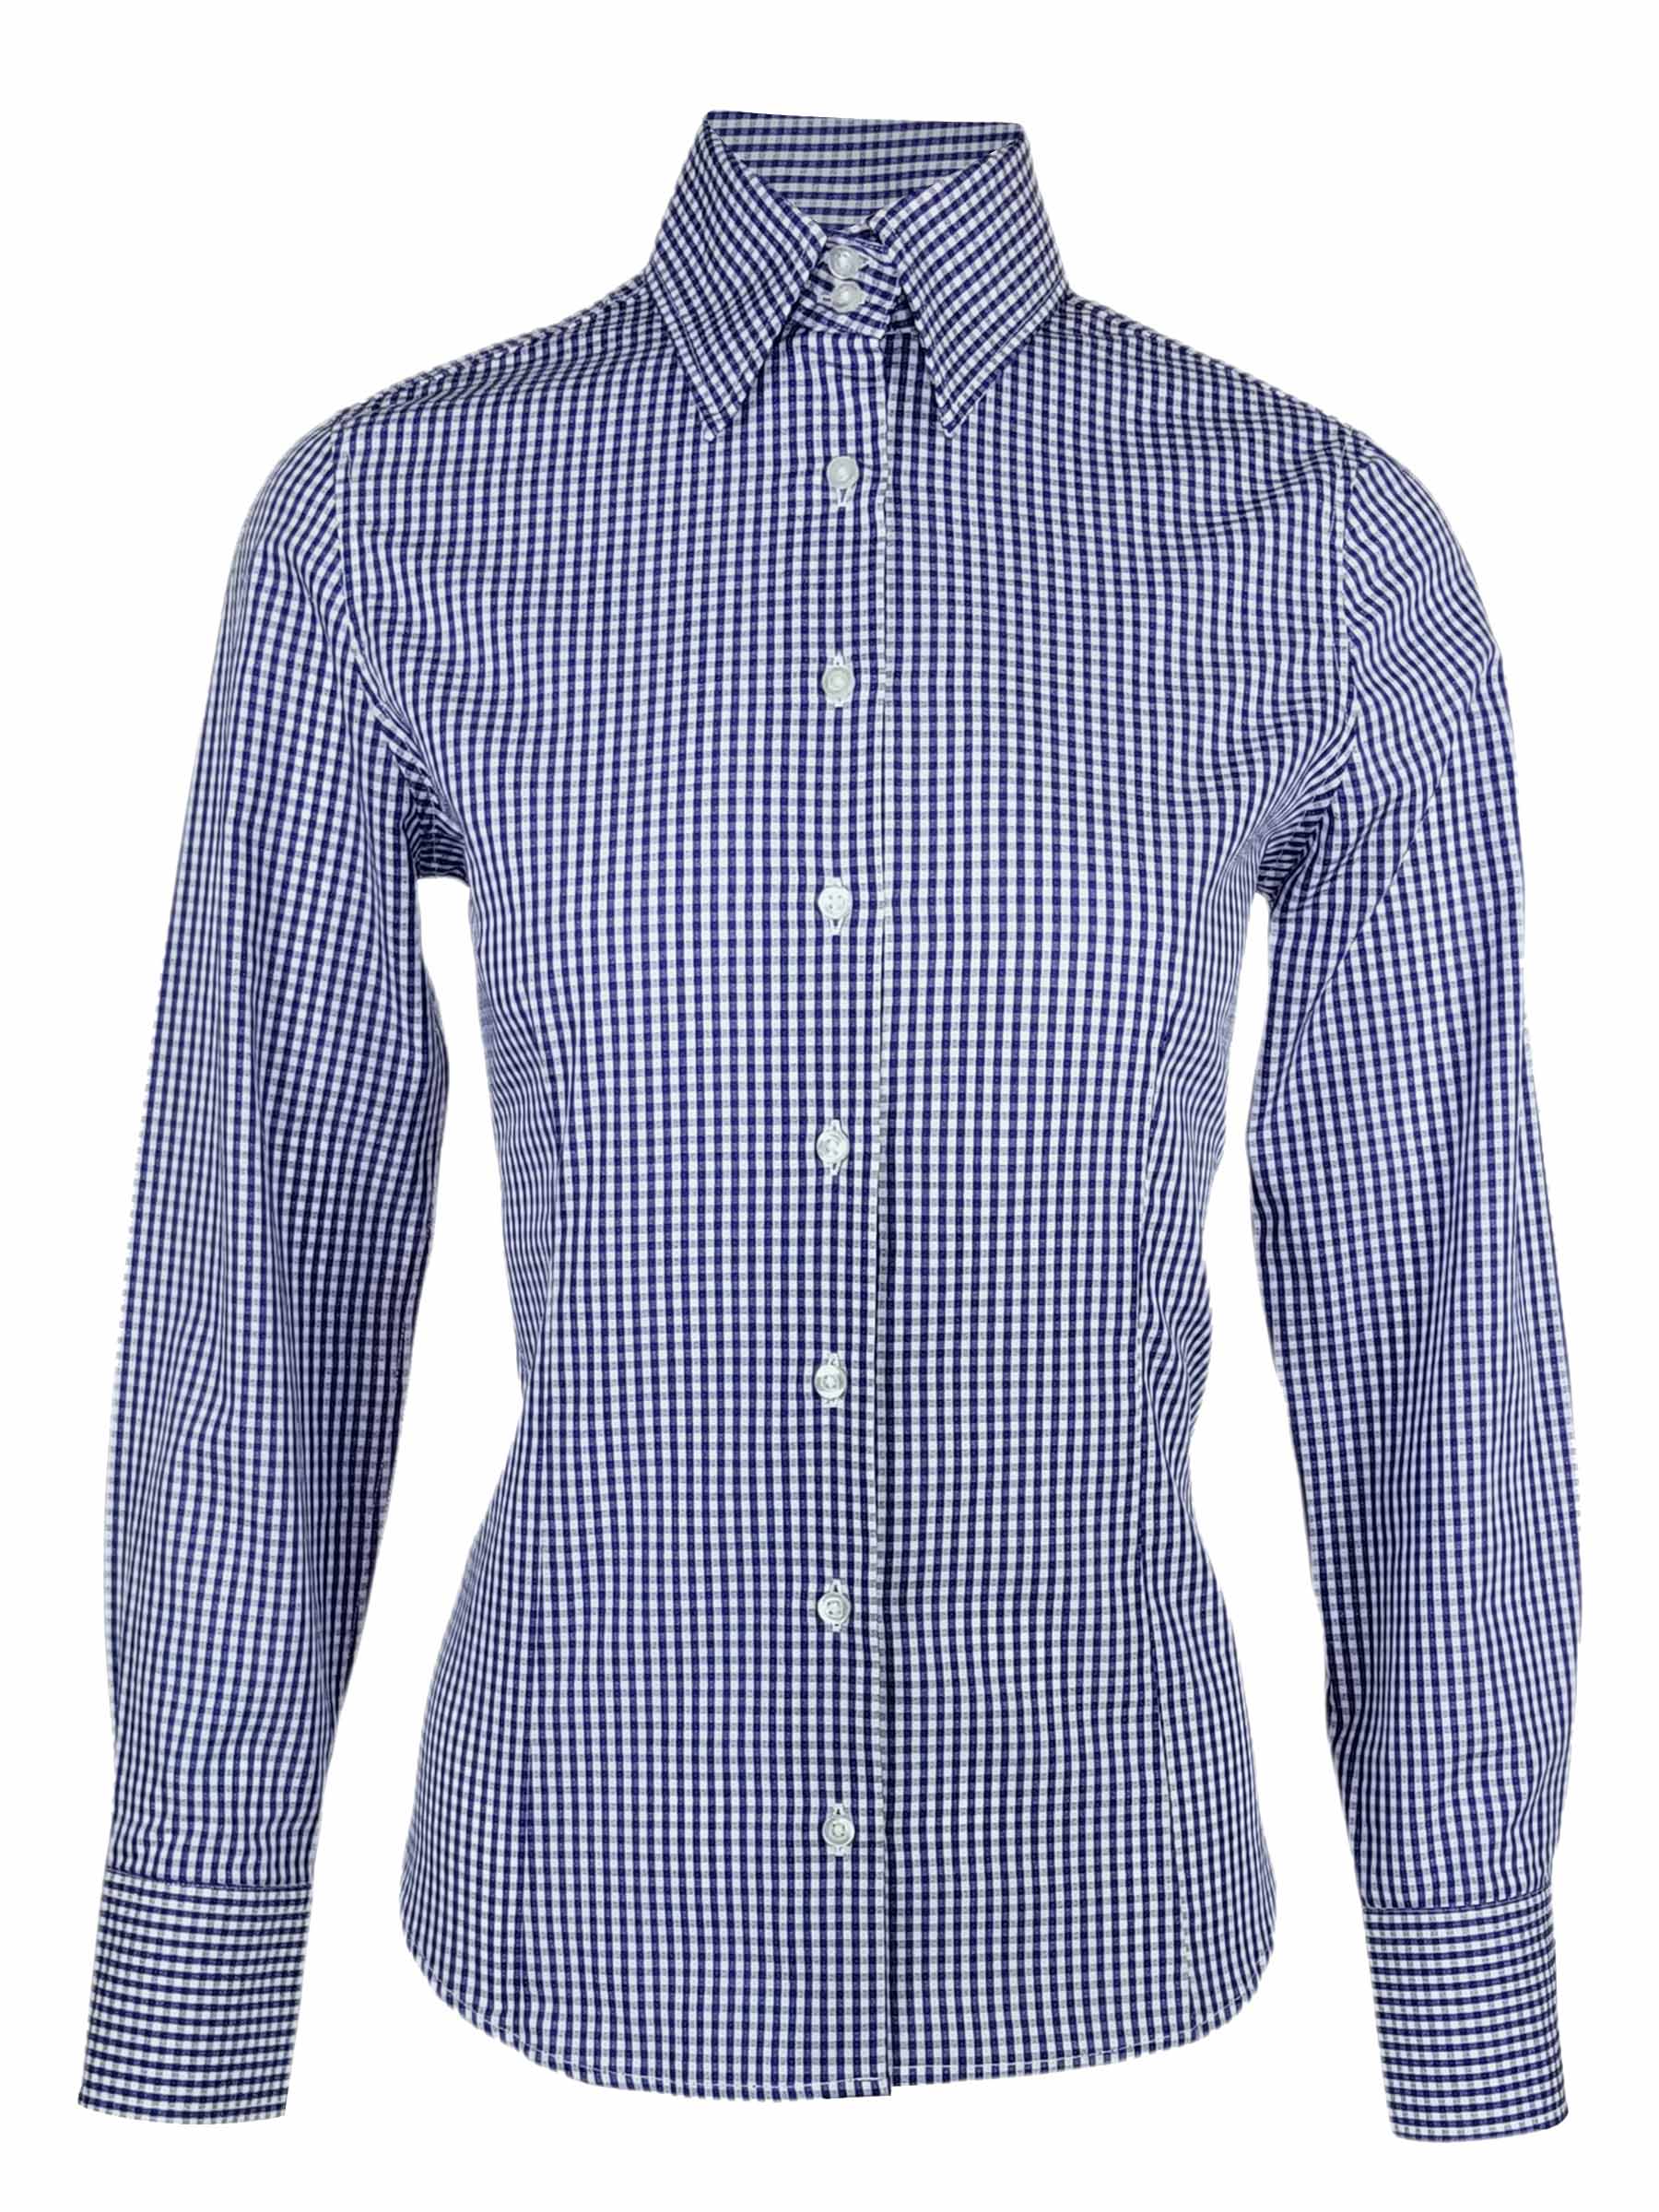 Women's Cotton Gingham Shirt - Cobalt Blue Check Long Sleeve - Uniform Edit